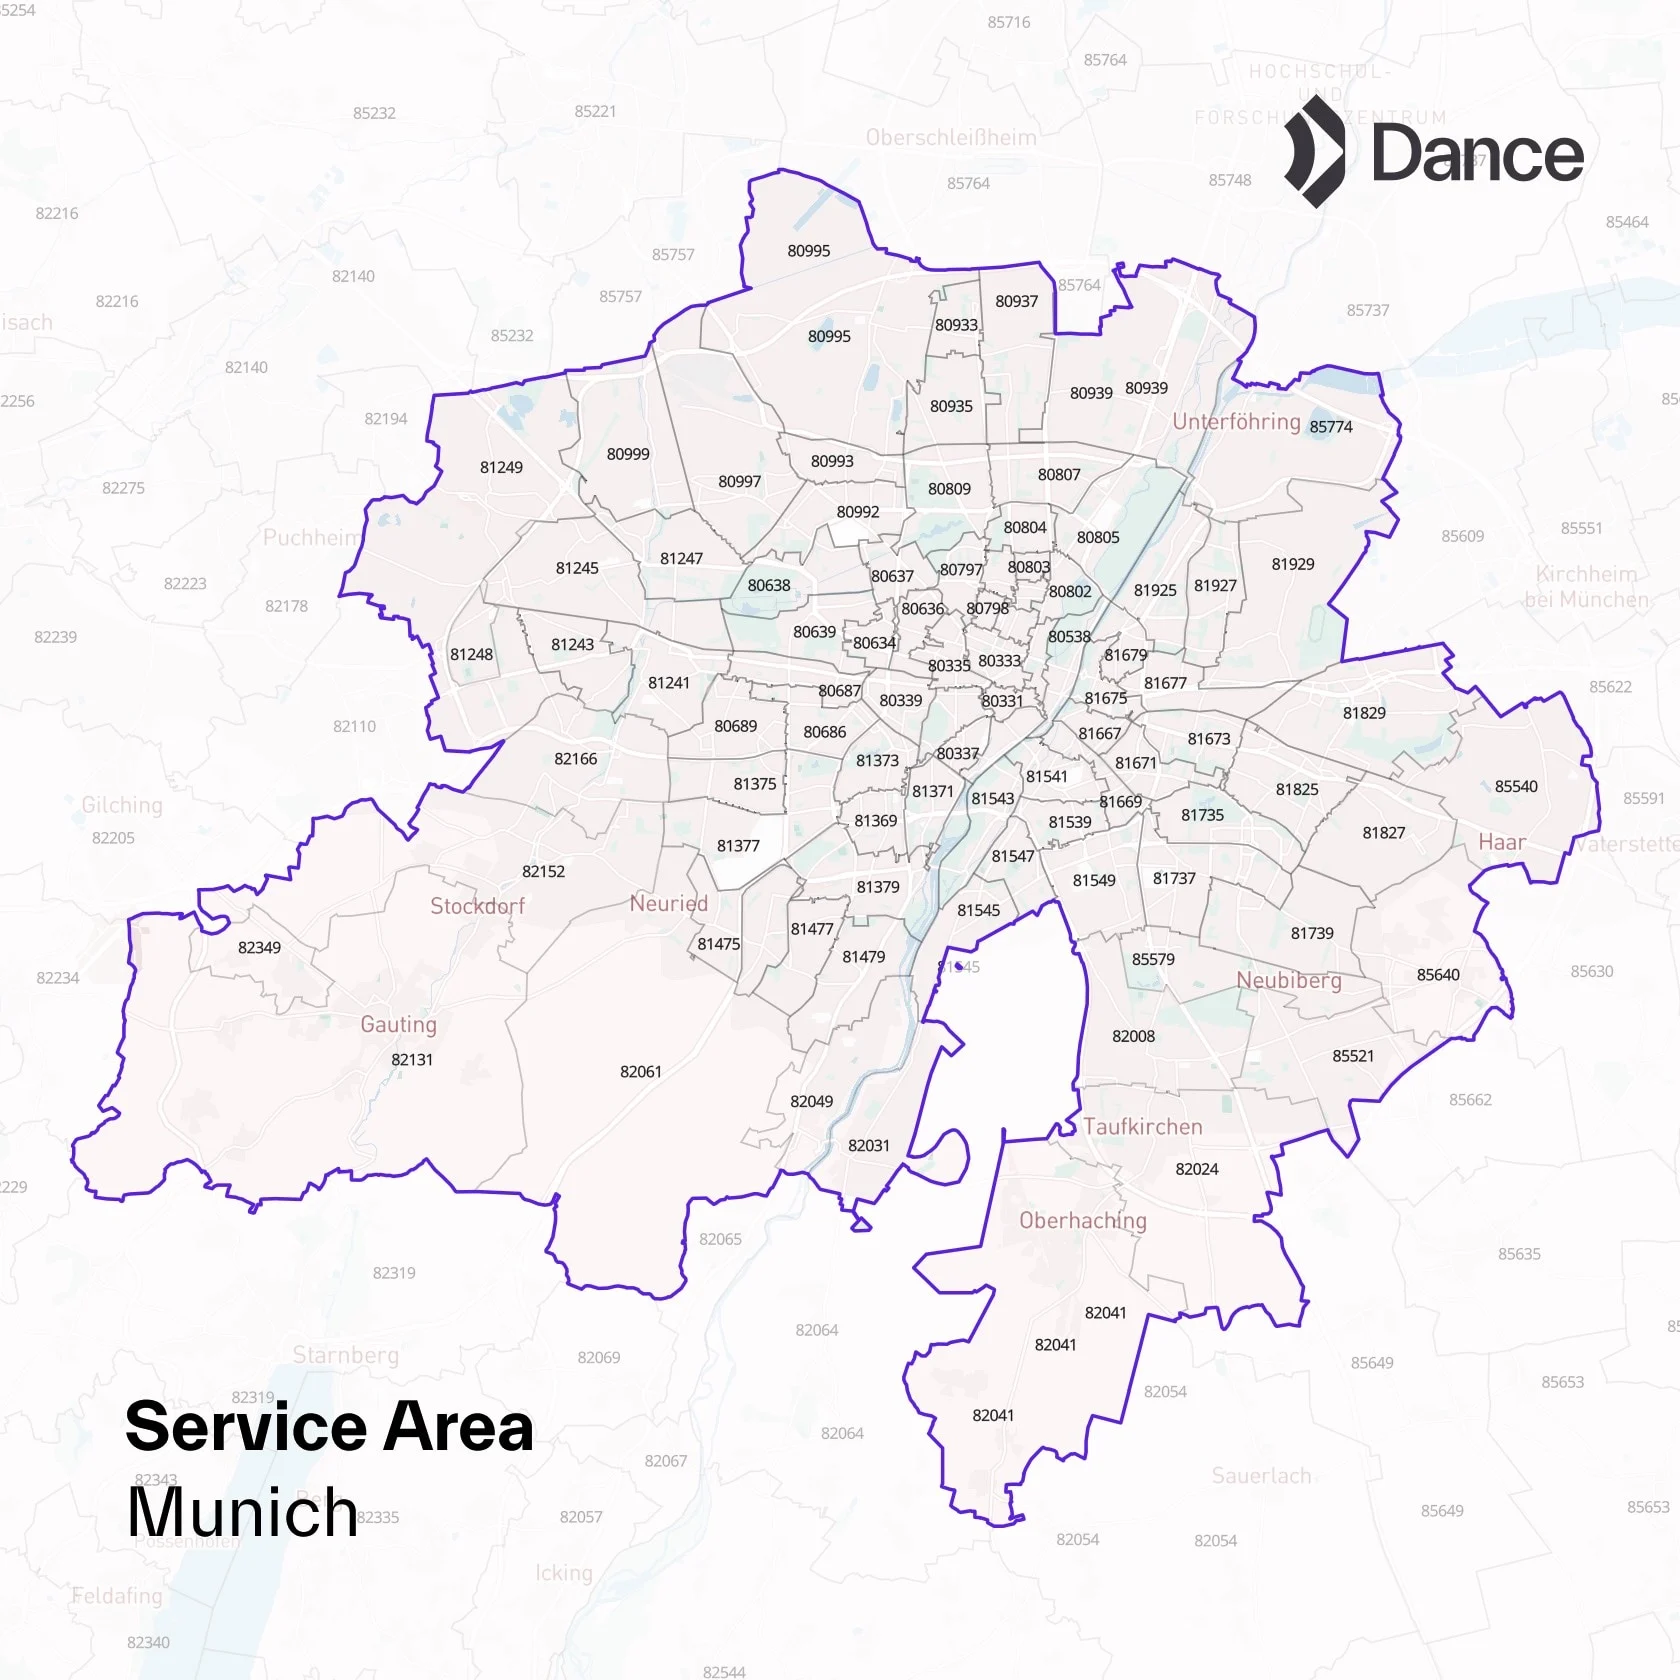 Dance Service Area Munich